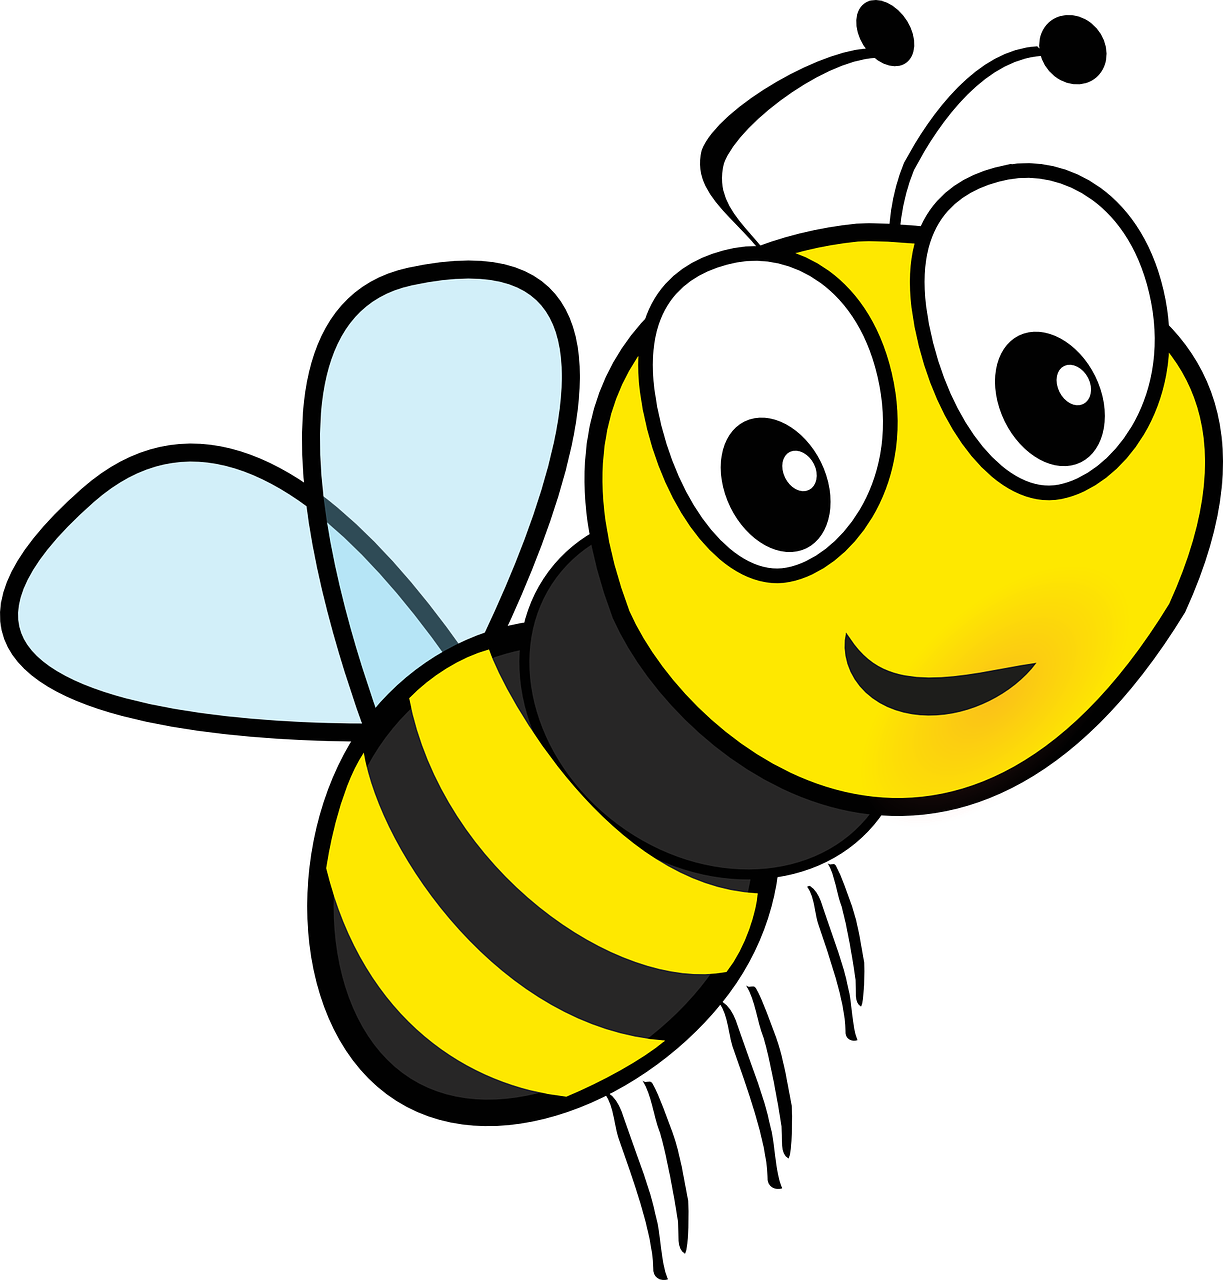 Bee Cartoon 3D Model Download